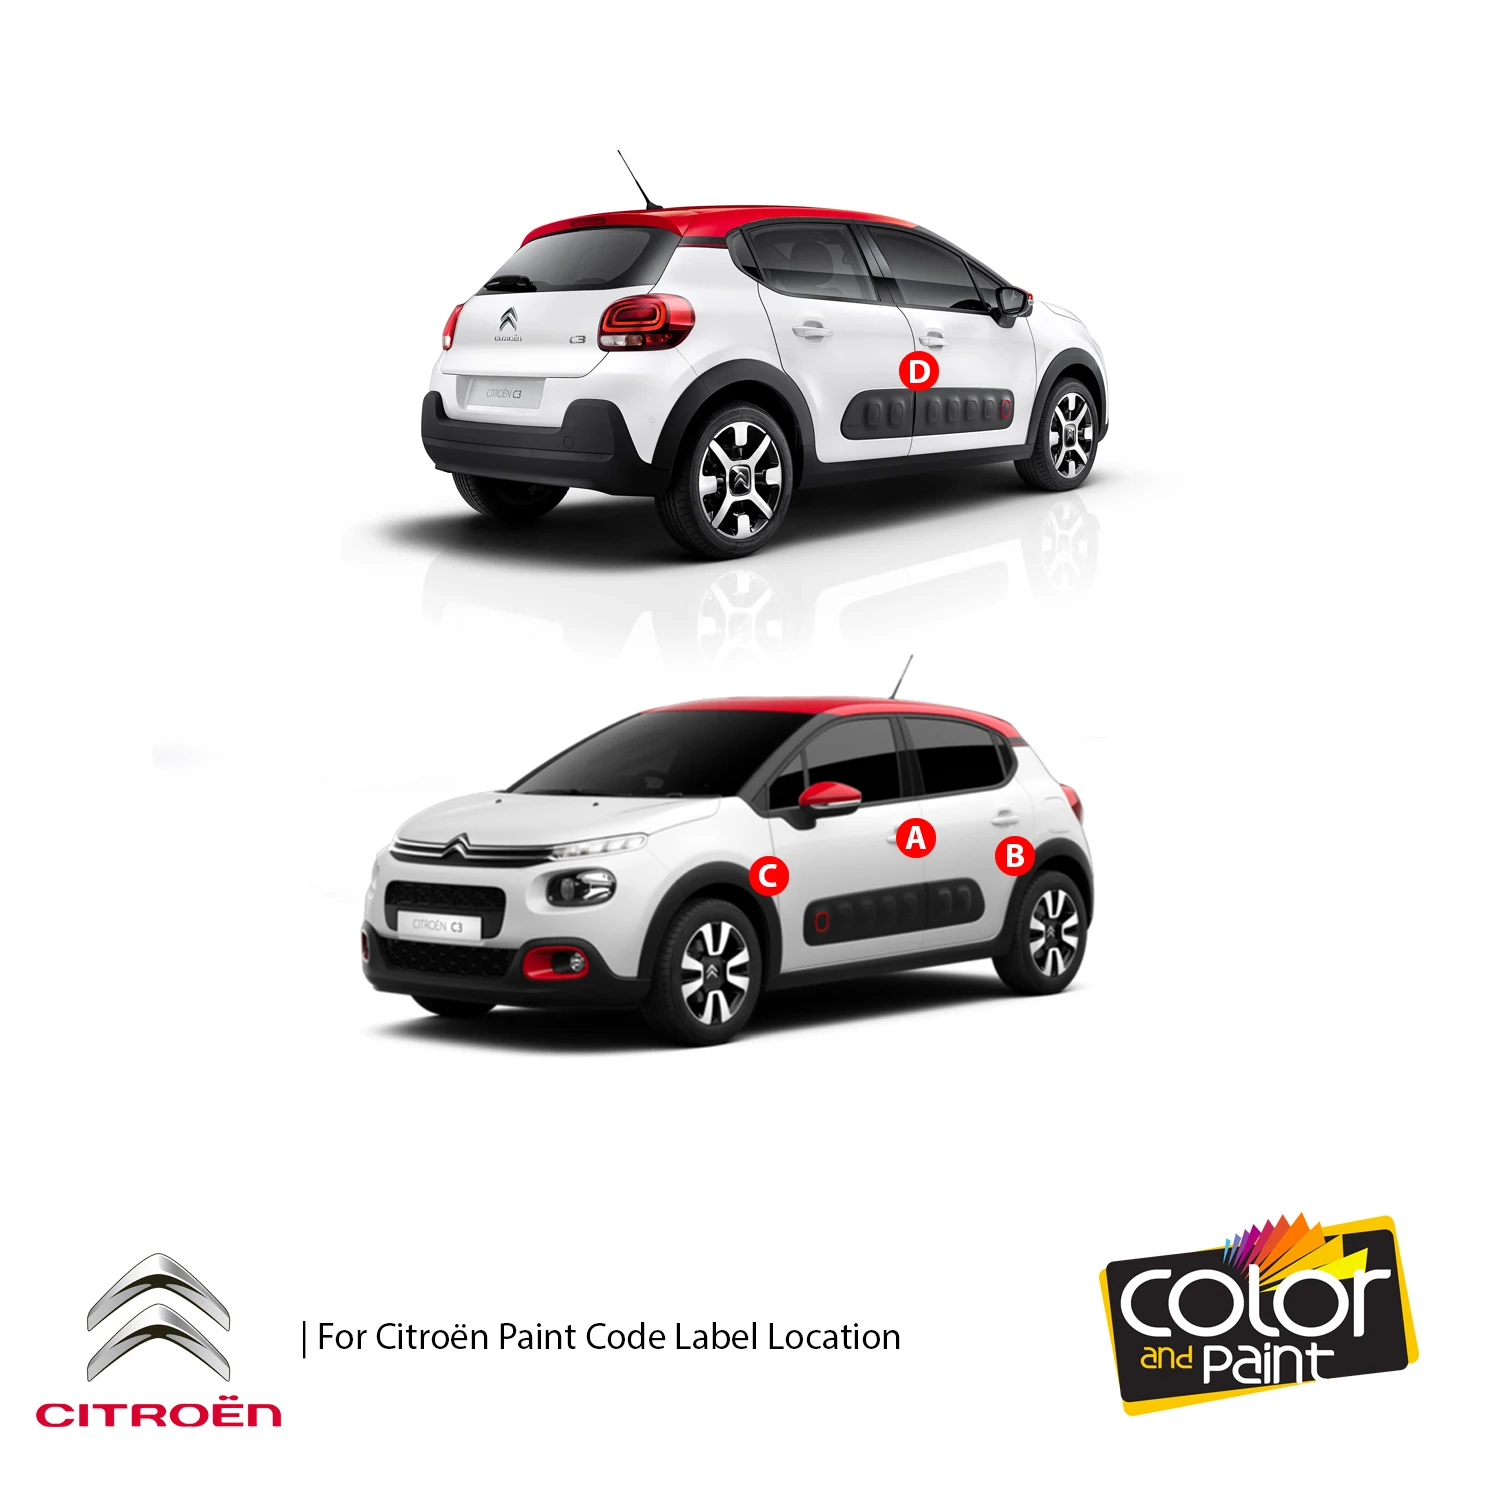 

Color and Paint for Citroen Automotive Touch Up Paint - GRIS GARRIGUE MET-TCC-Paint Scratch Repair, exact Match